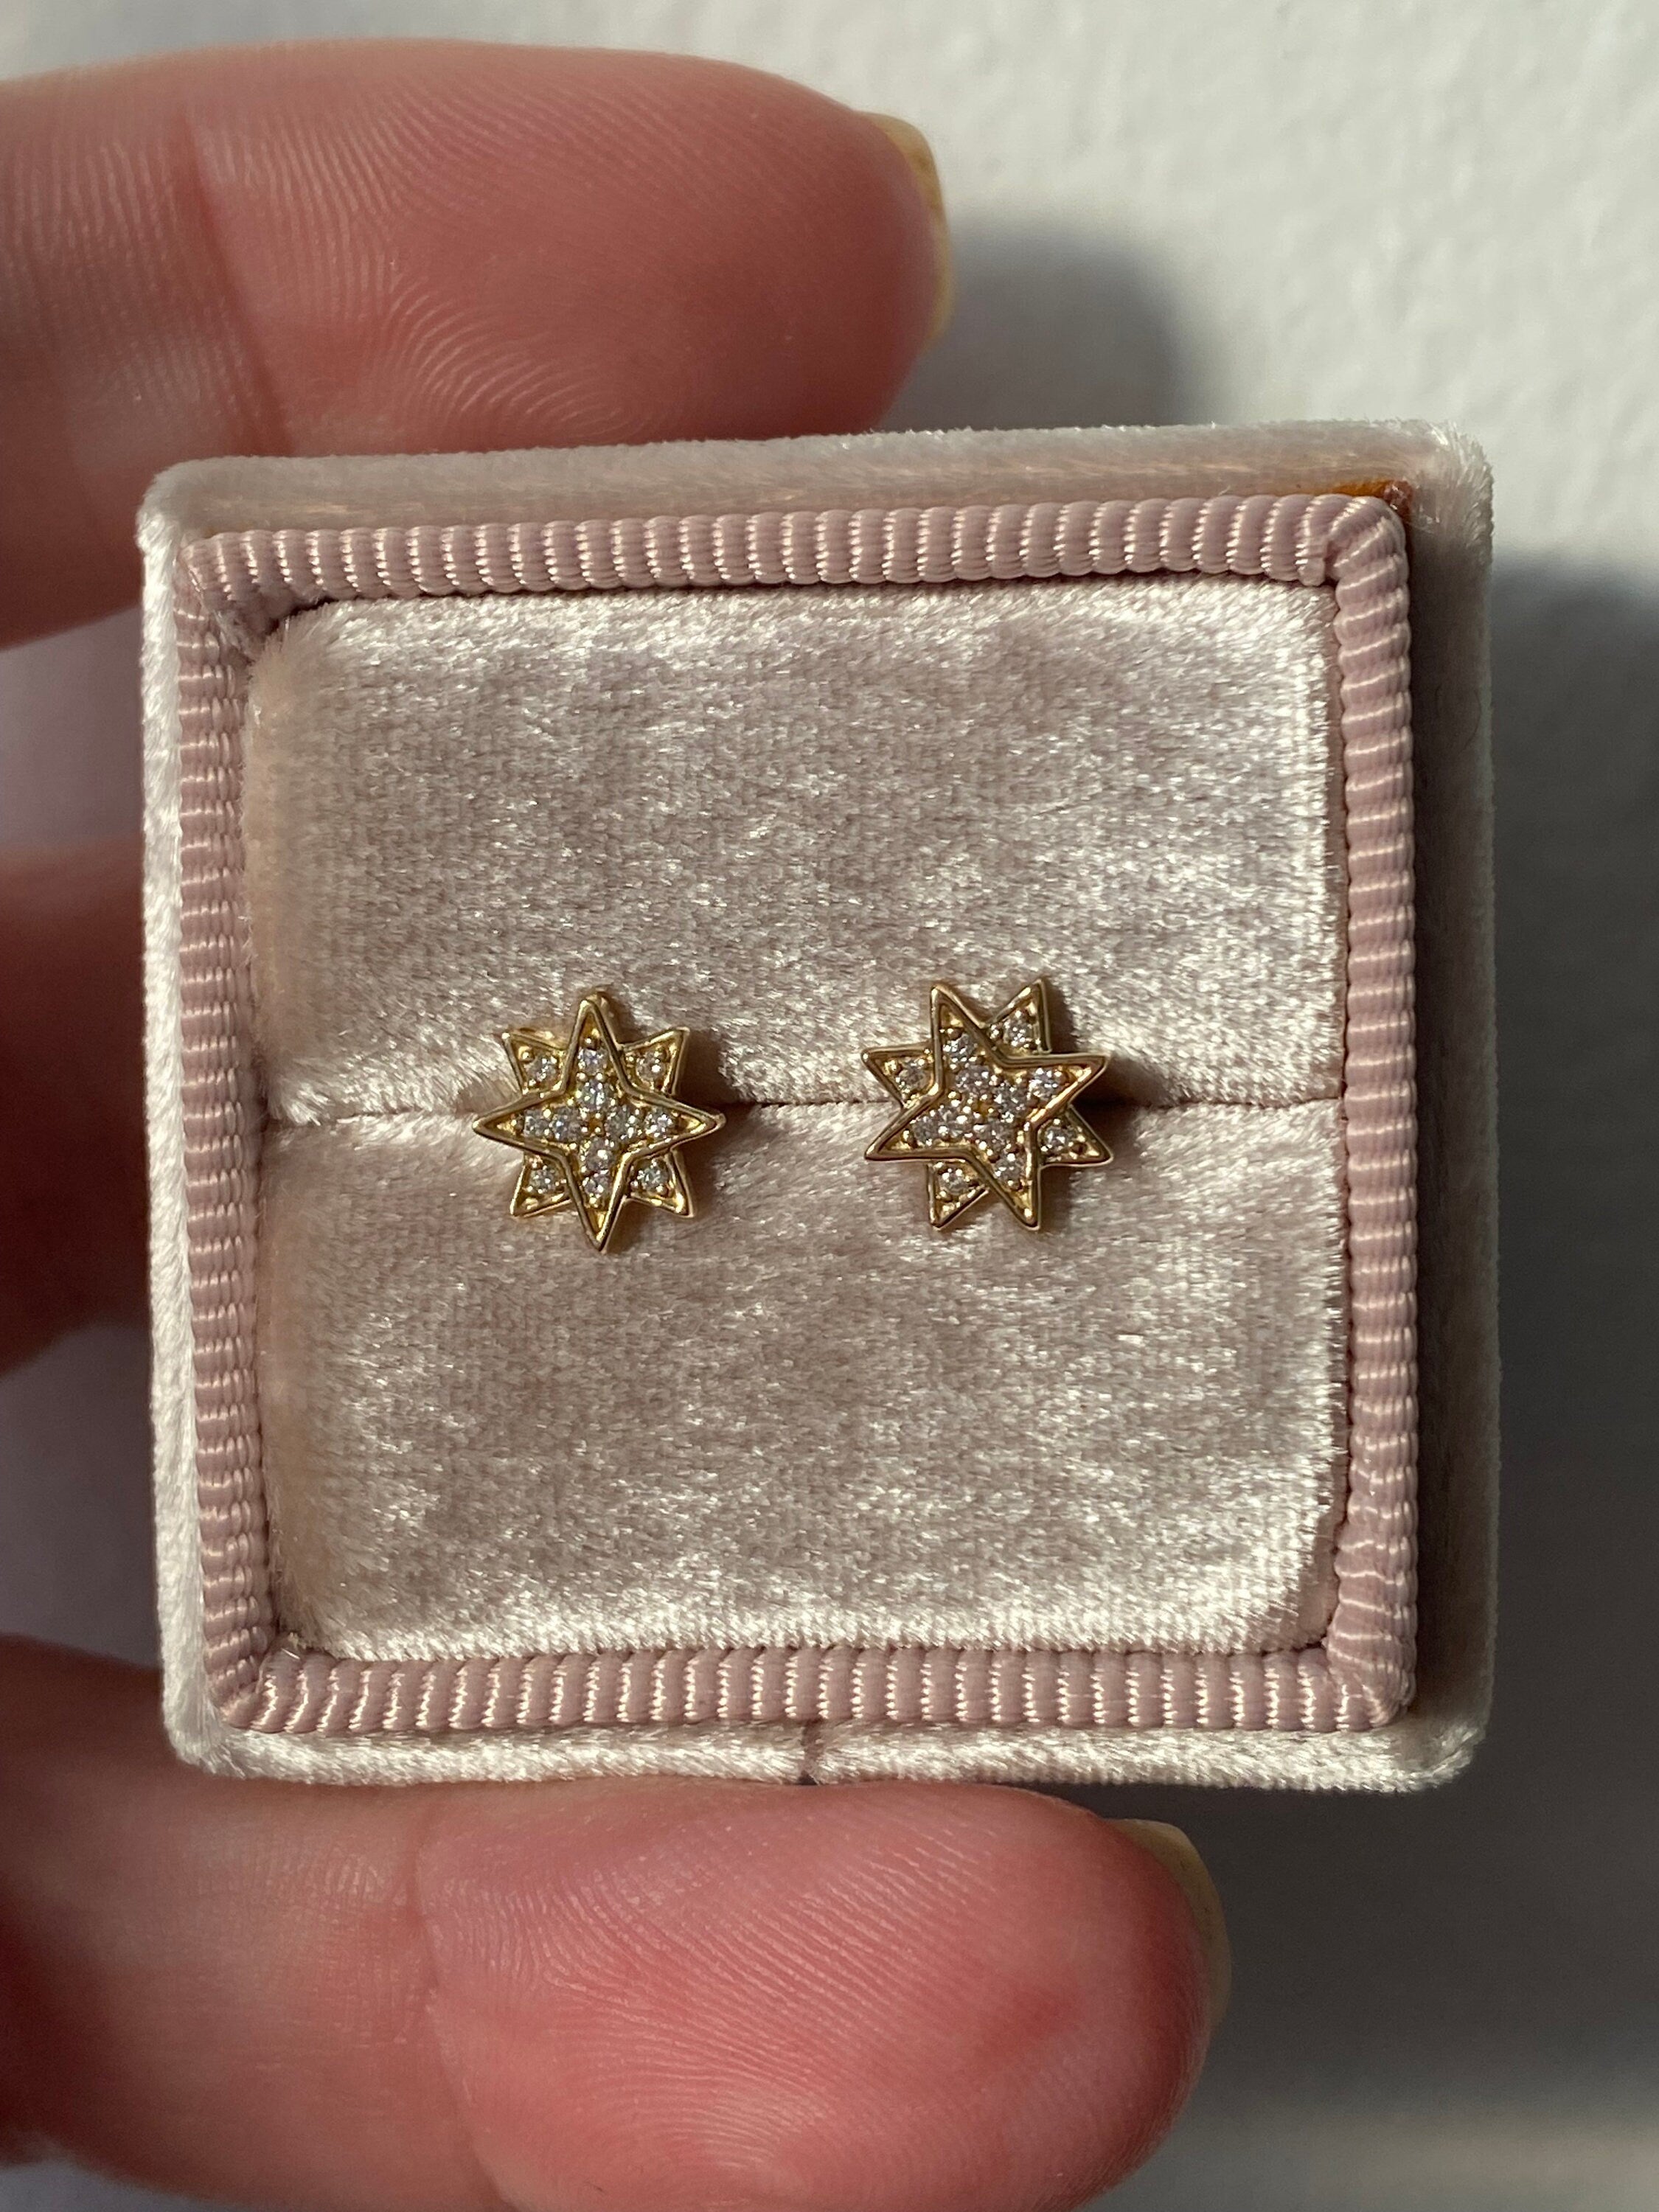 Star Diamond Stud Earrings in Solid 14K Gold.